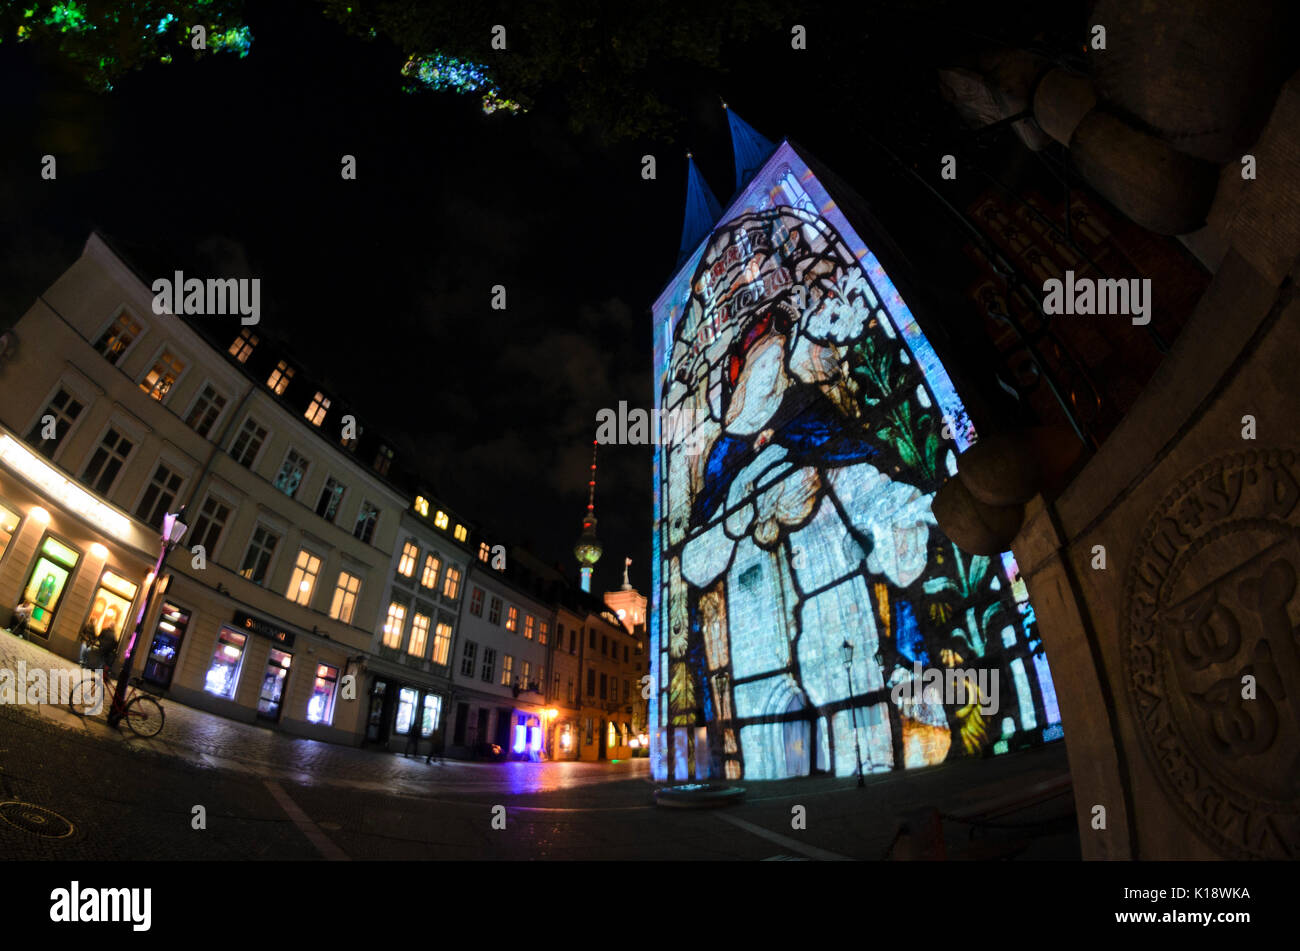 Light projection on Nikolaikirche, Berlin, Germany Stock Photo